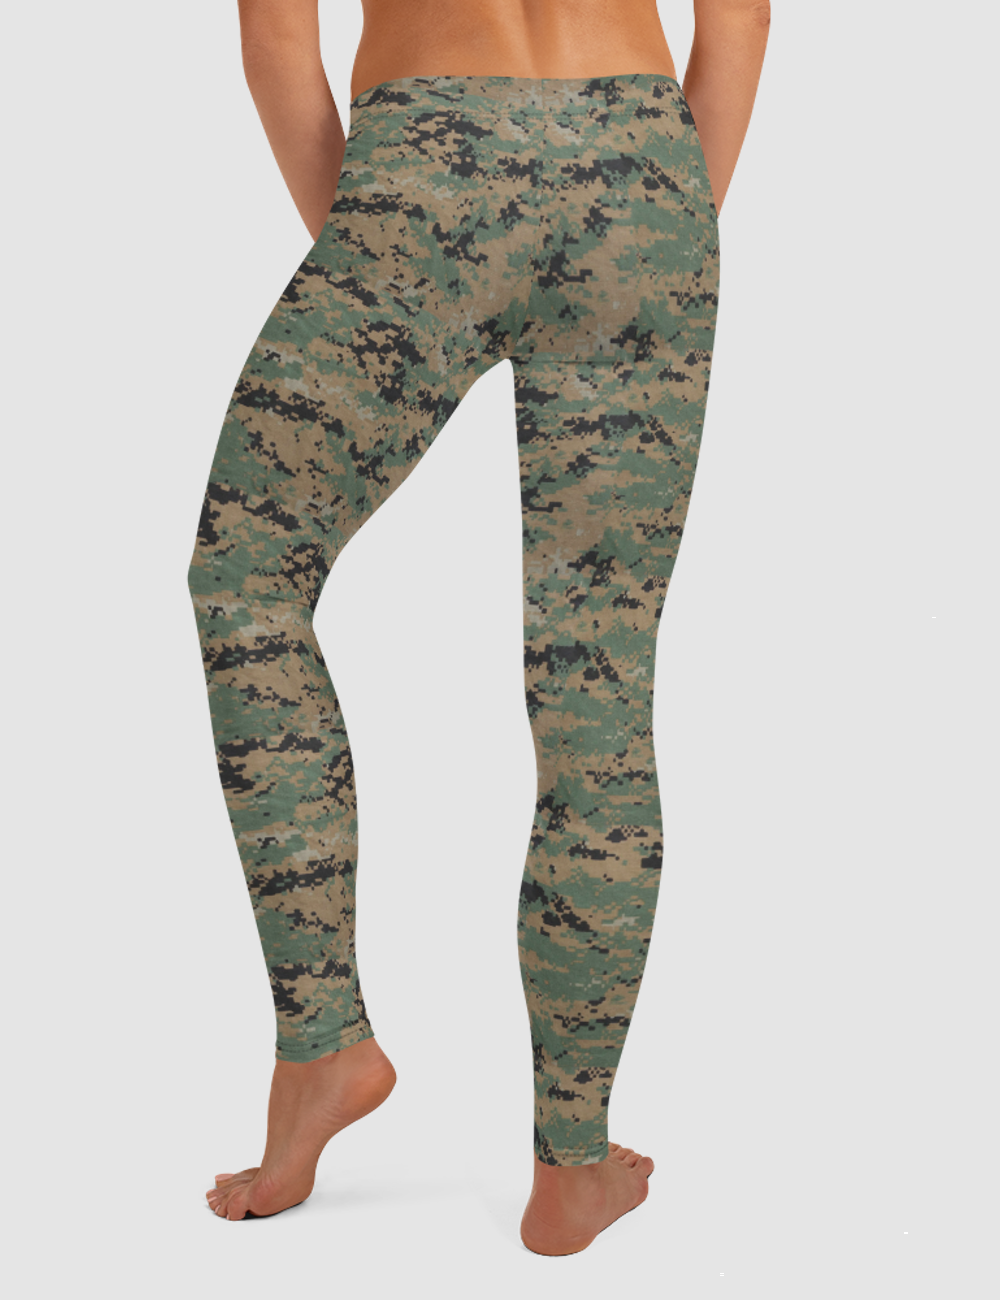 MARPAT Digital Woodland Camouflage Print | Women's Standard Yoga Leggings OniTakai